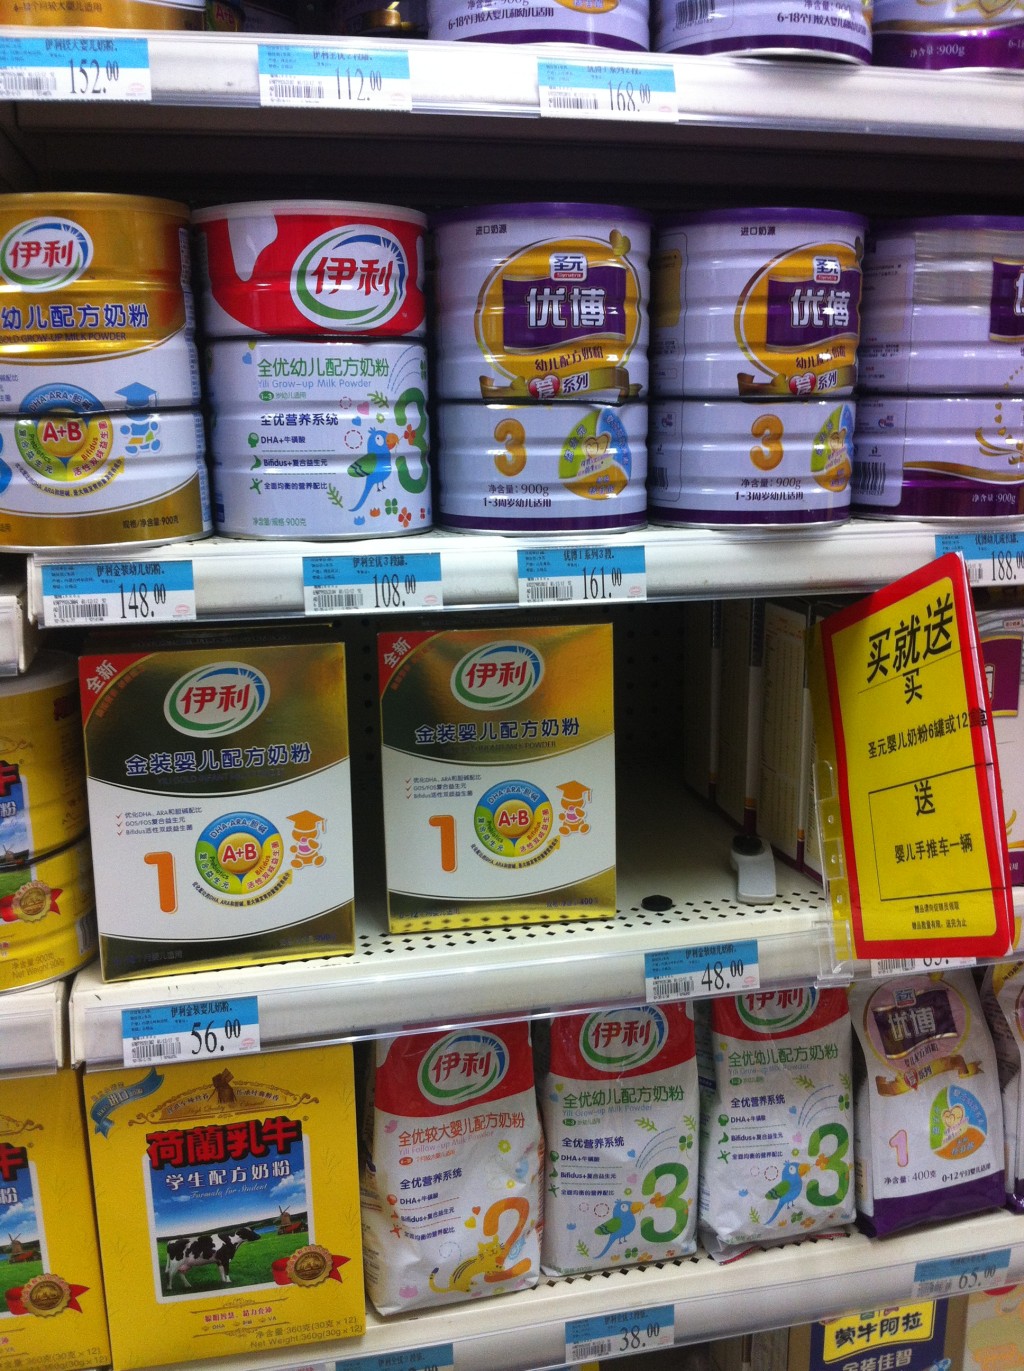 内地奶粉商一度以“买奶粉送BB车”吸客。 资料图片